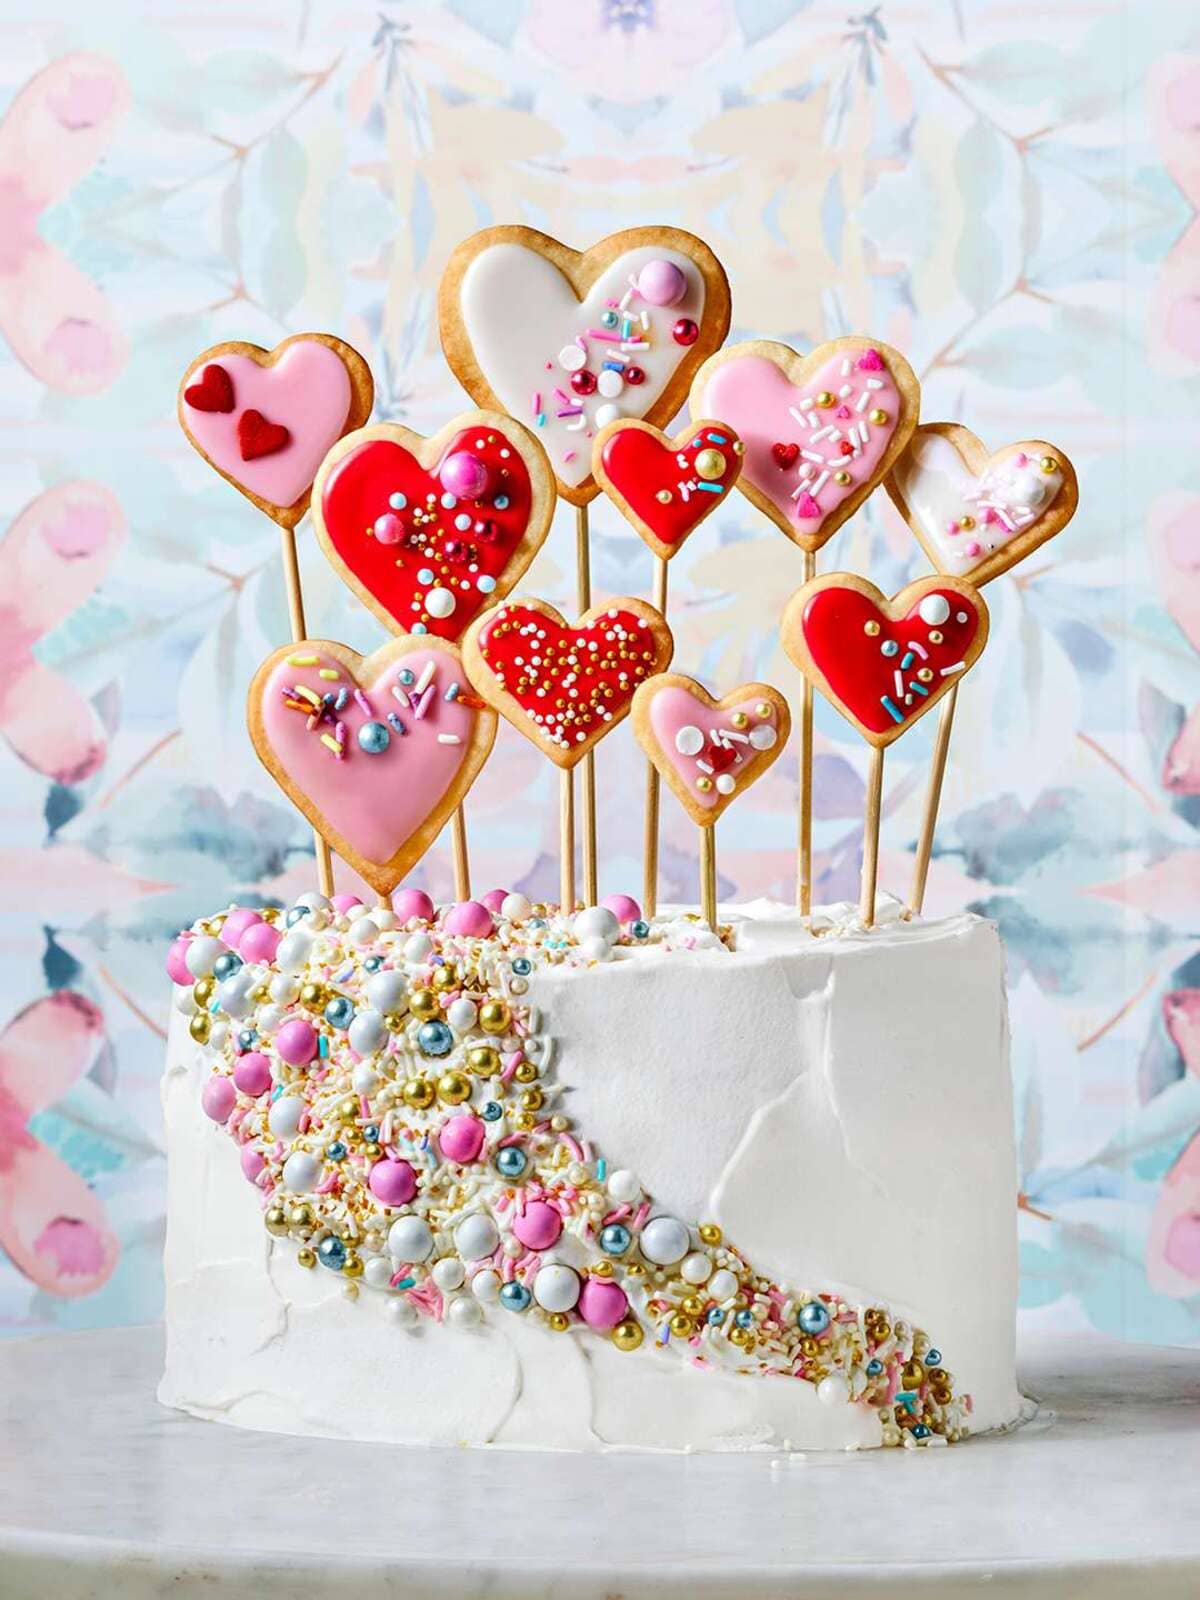 20+ ý tưởng trang trí bánh kem Valentine cực ngọt ngào cho người thương 22